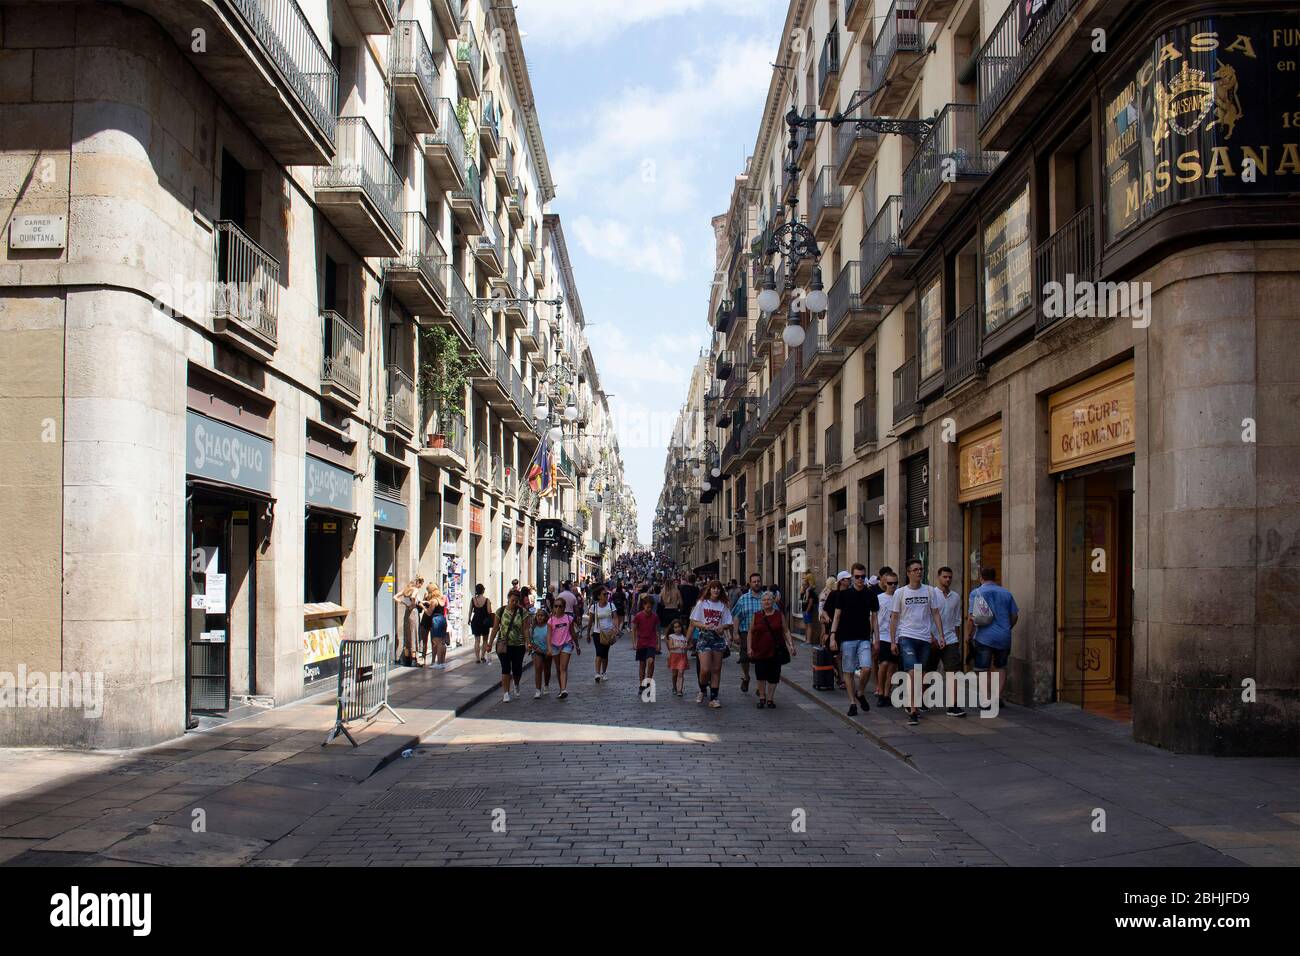 Passeig De Gracia Shopping Street Editorial Stock Photo - Image of shopping,  shop: 105044793